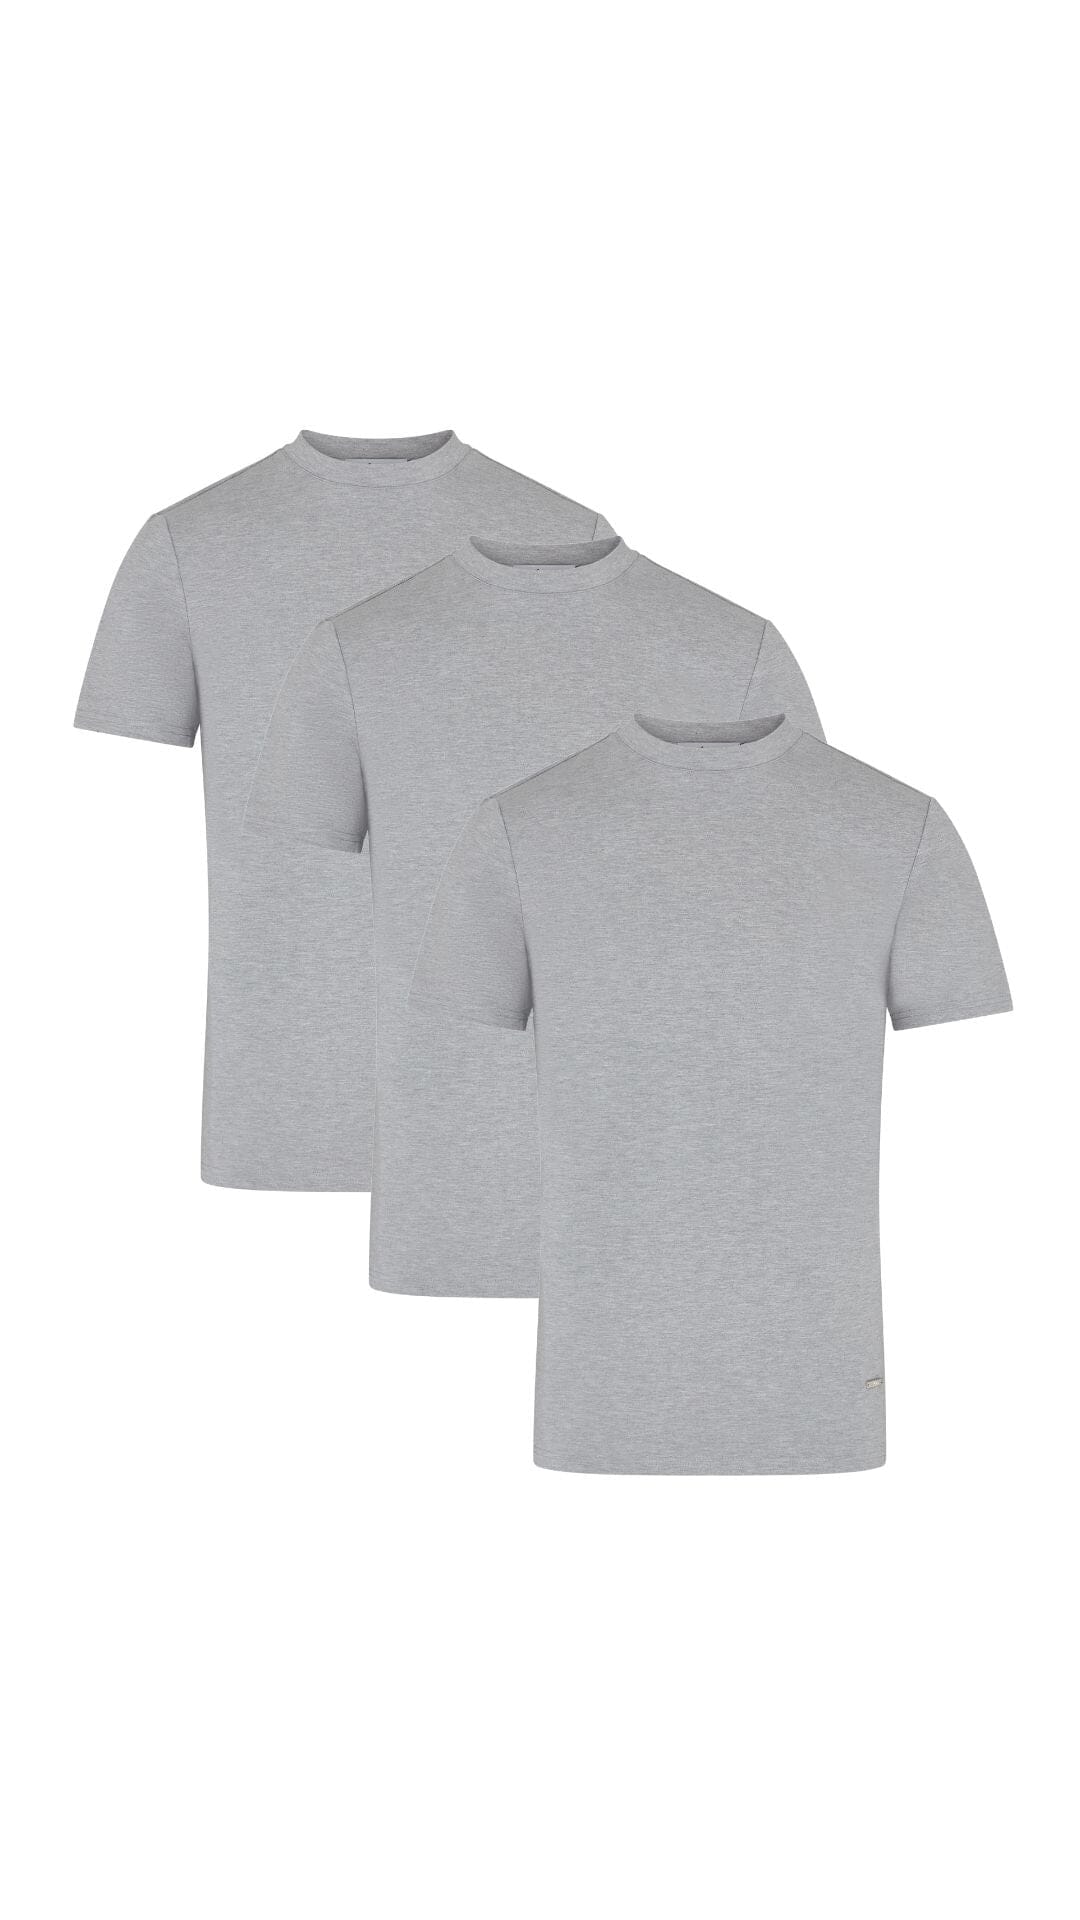 3 Pack Premium Grey Marl T-Shirt